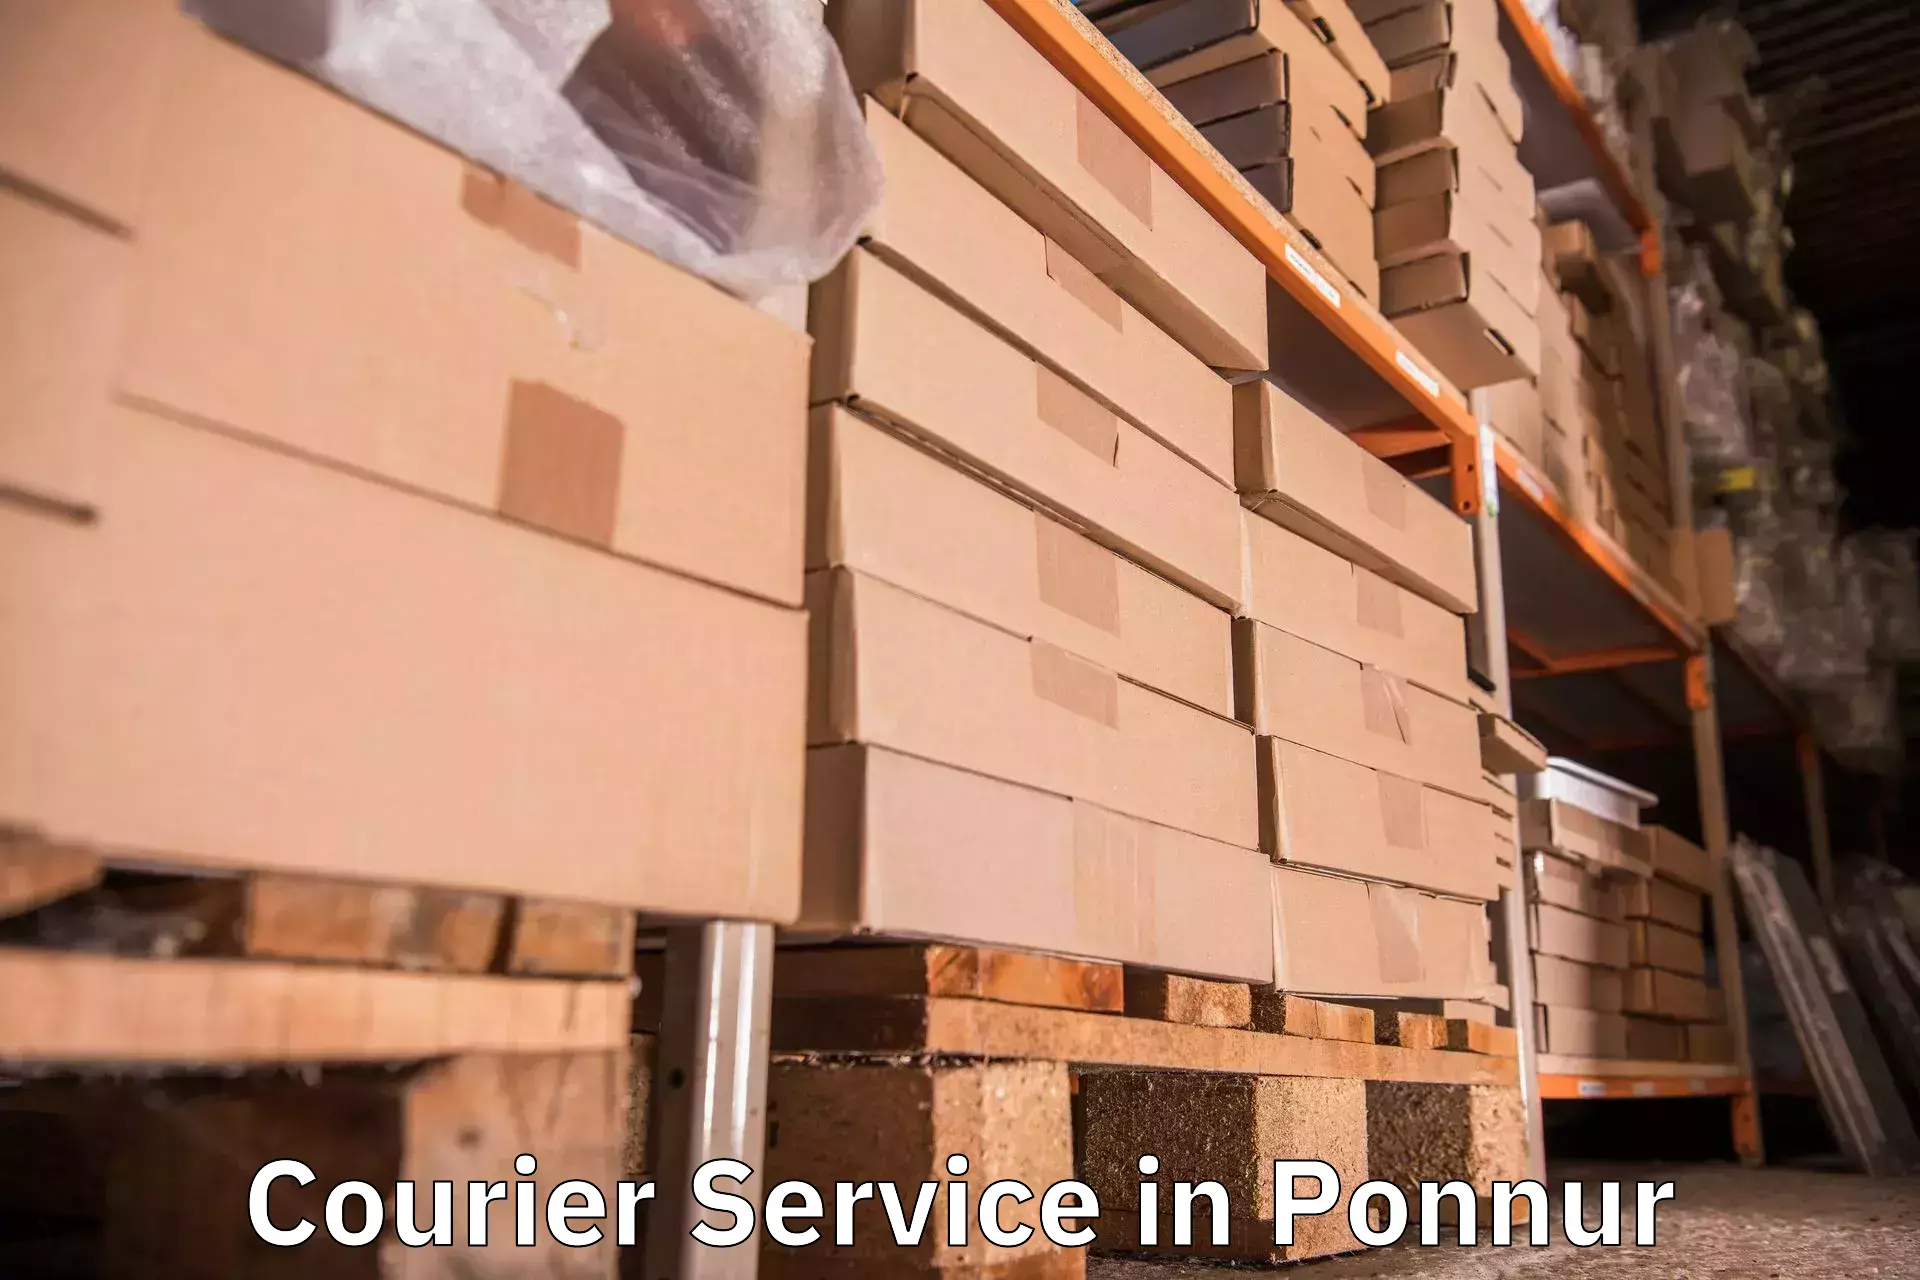 Weekend courier service in Ponnur